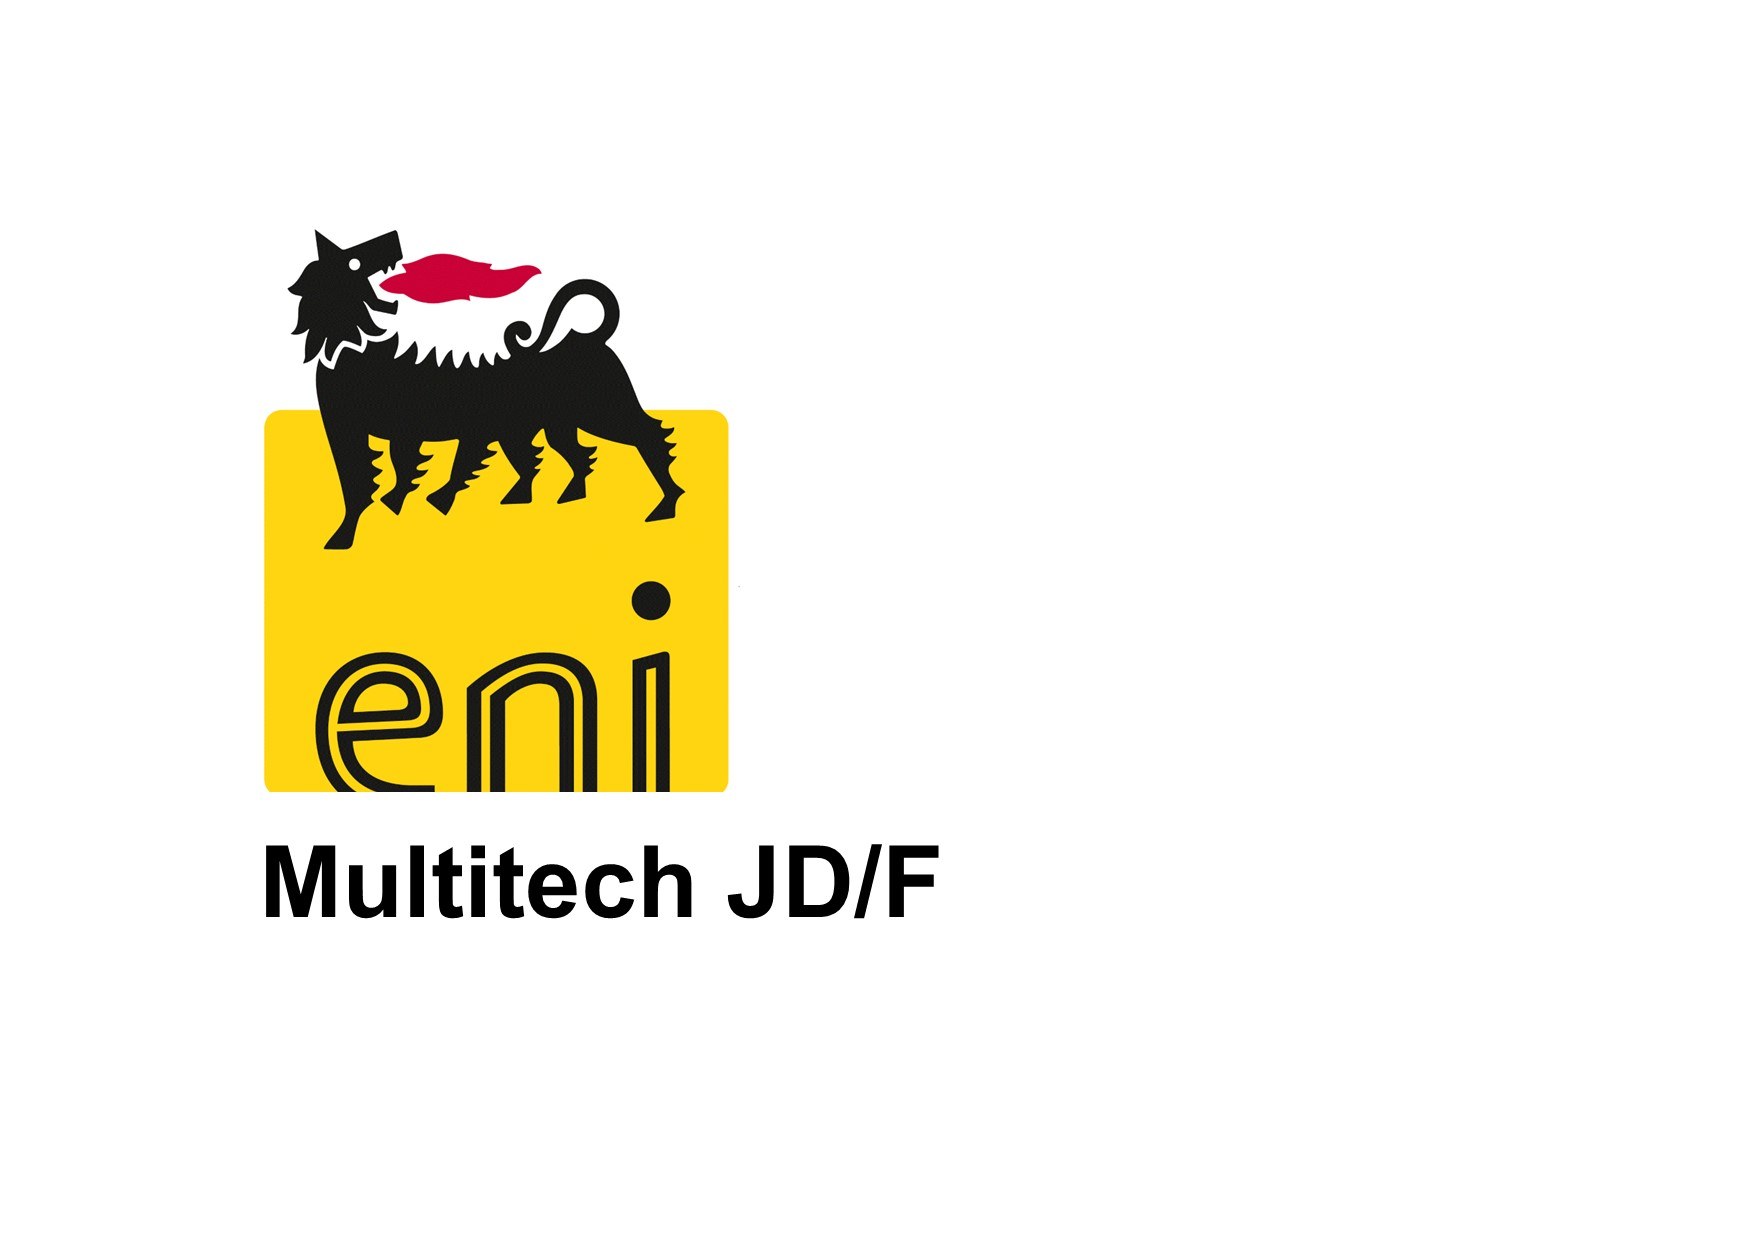 Eni multitech JD F